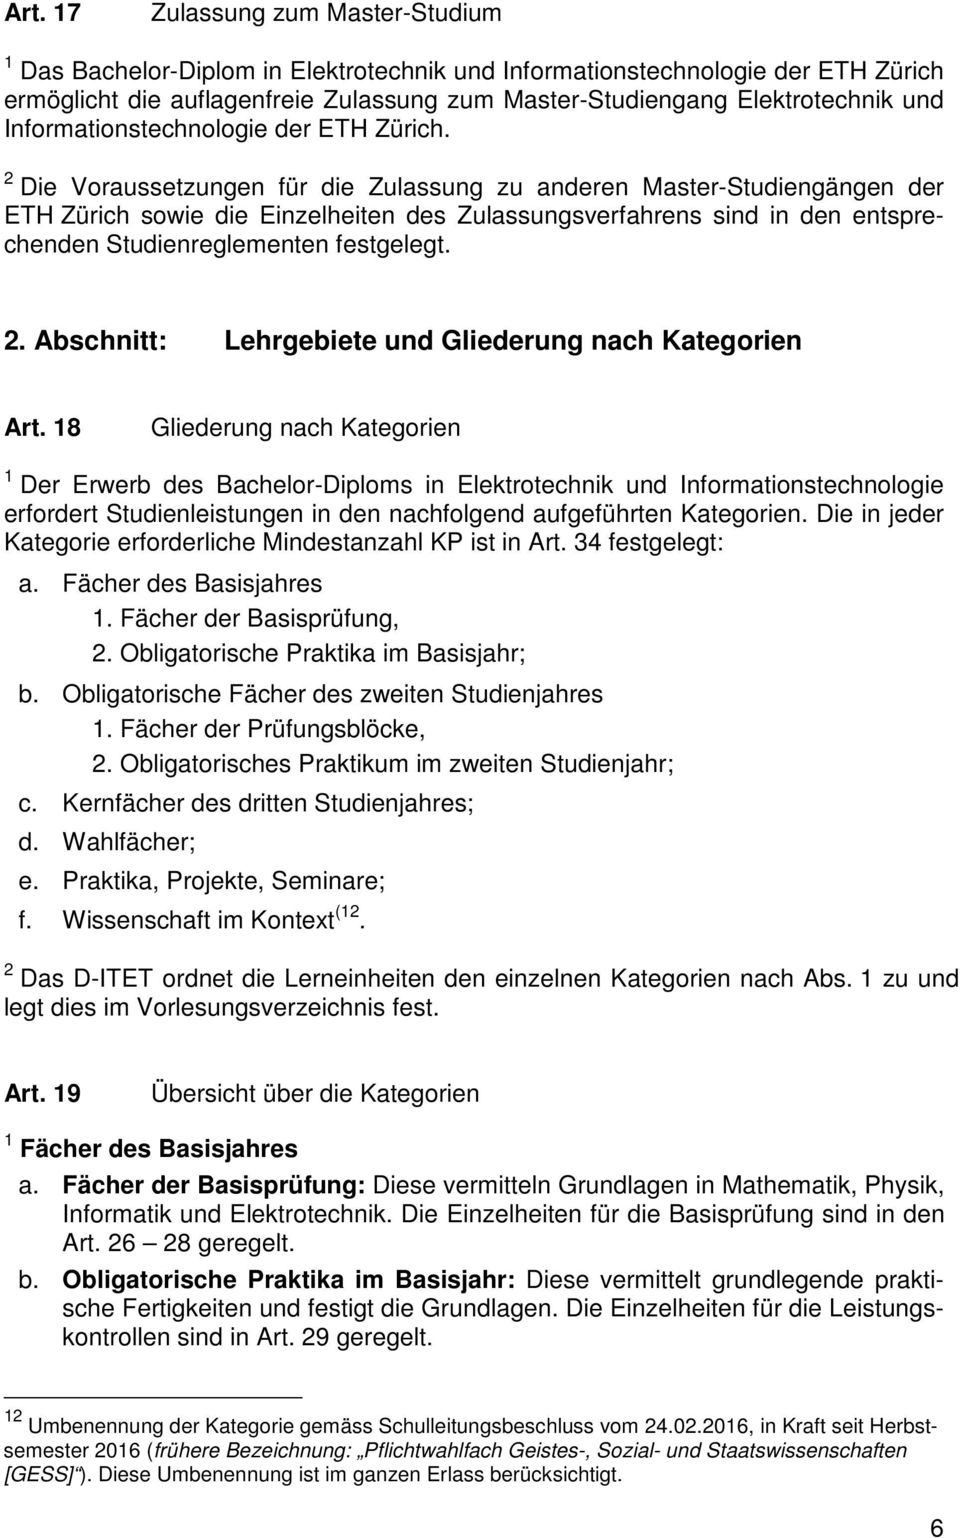 2 Die Voraussetzungen für die Zulassung zu anderen Master-Studiengängen der ETH Zürich sowie die Einzelheiten des Zulassungsverfahrens sind in den entsprechenden Studienreglementen festgelegt. 2.